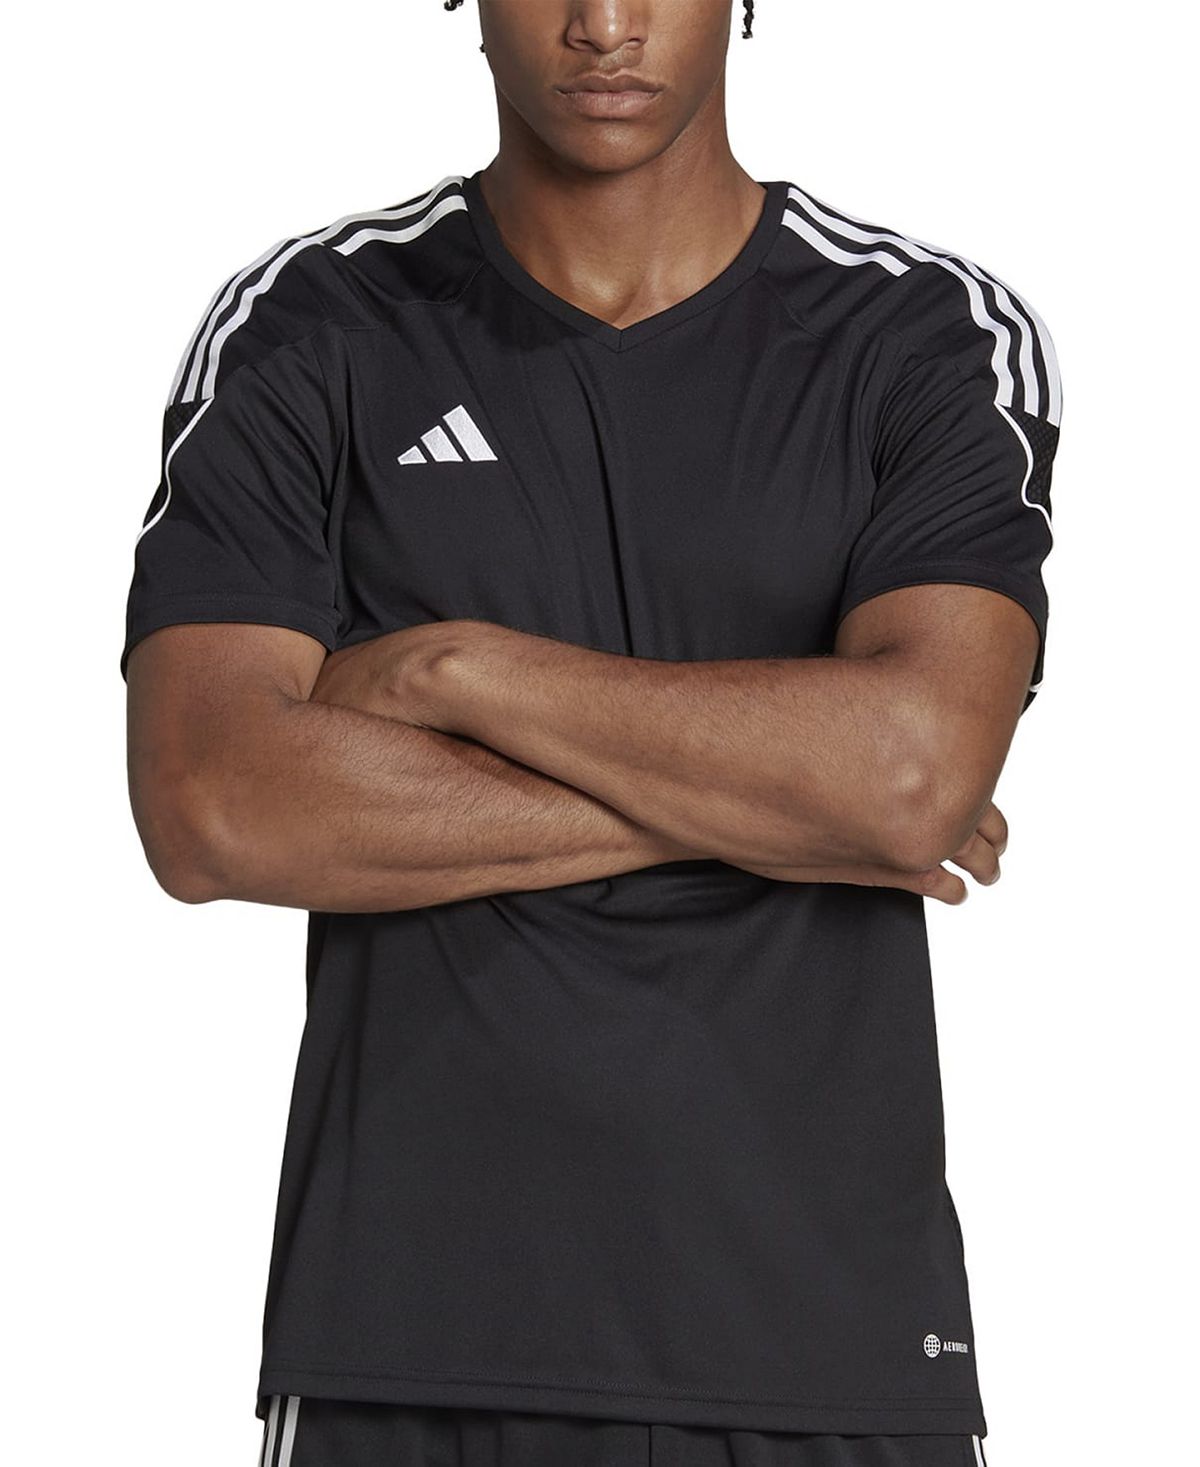 Мужская футболка узкого кроя с 3 полосками Tiro 23 League Performance adidas кепка adidas tiro c40 cap унисекс du1989 osfm